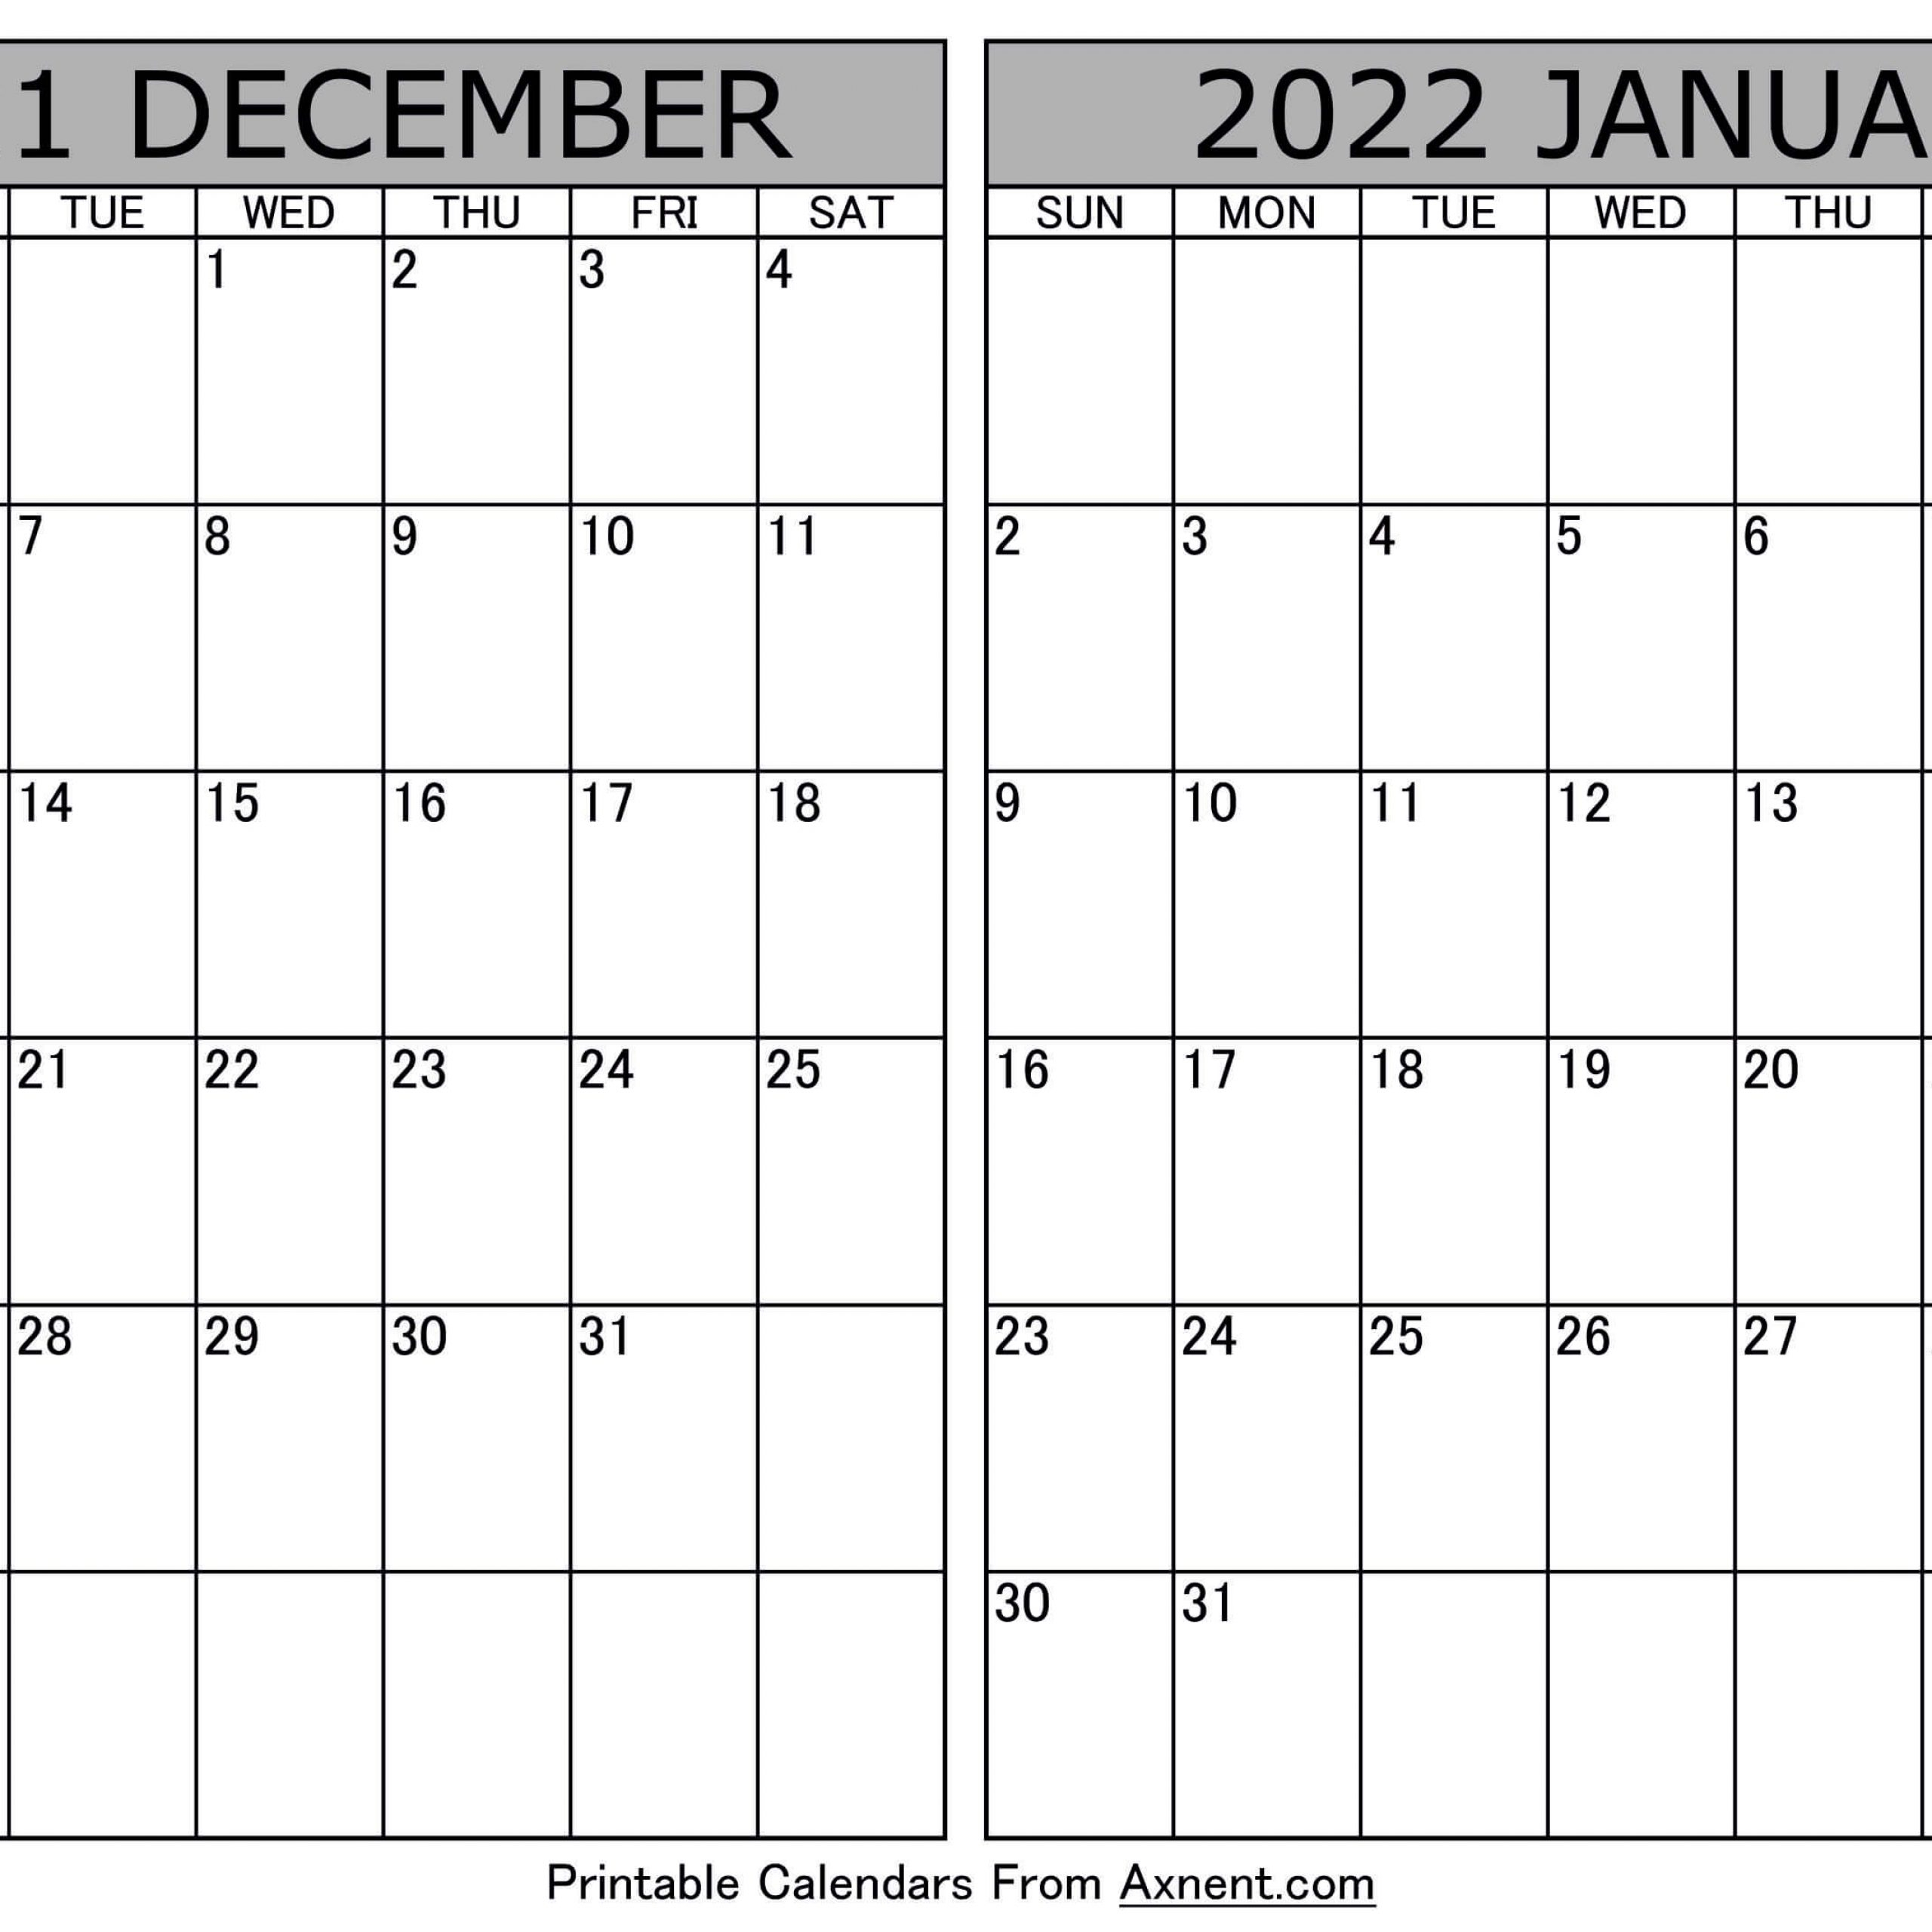 February 2021 Calendar 3 | Avnitasoni with November 2022 Calendar Word Avnitasoni